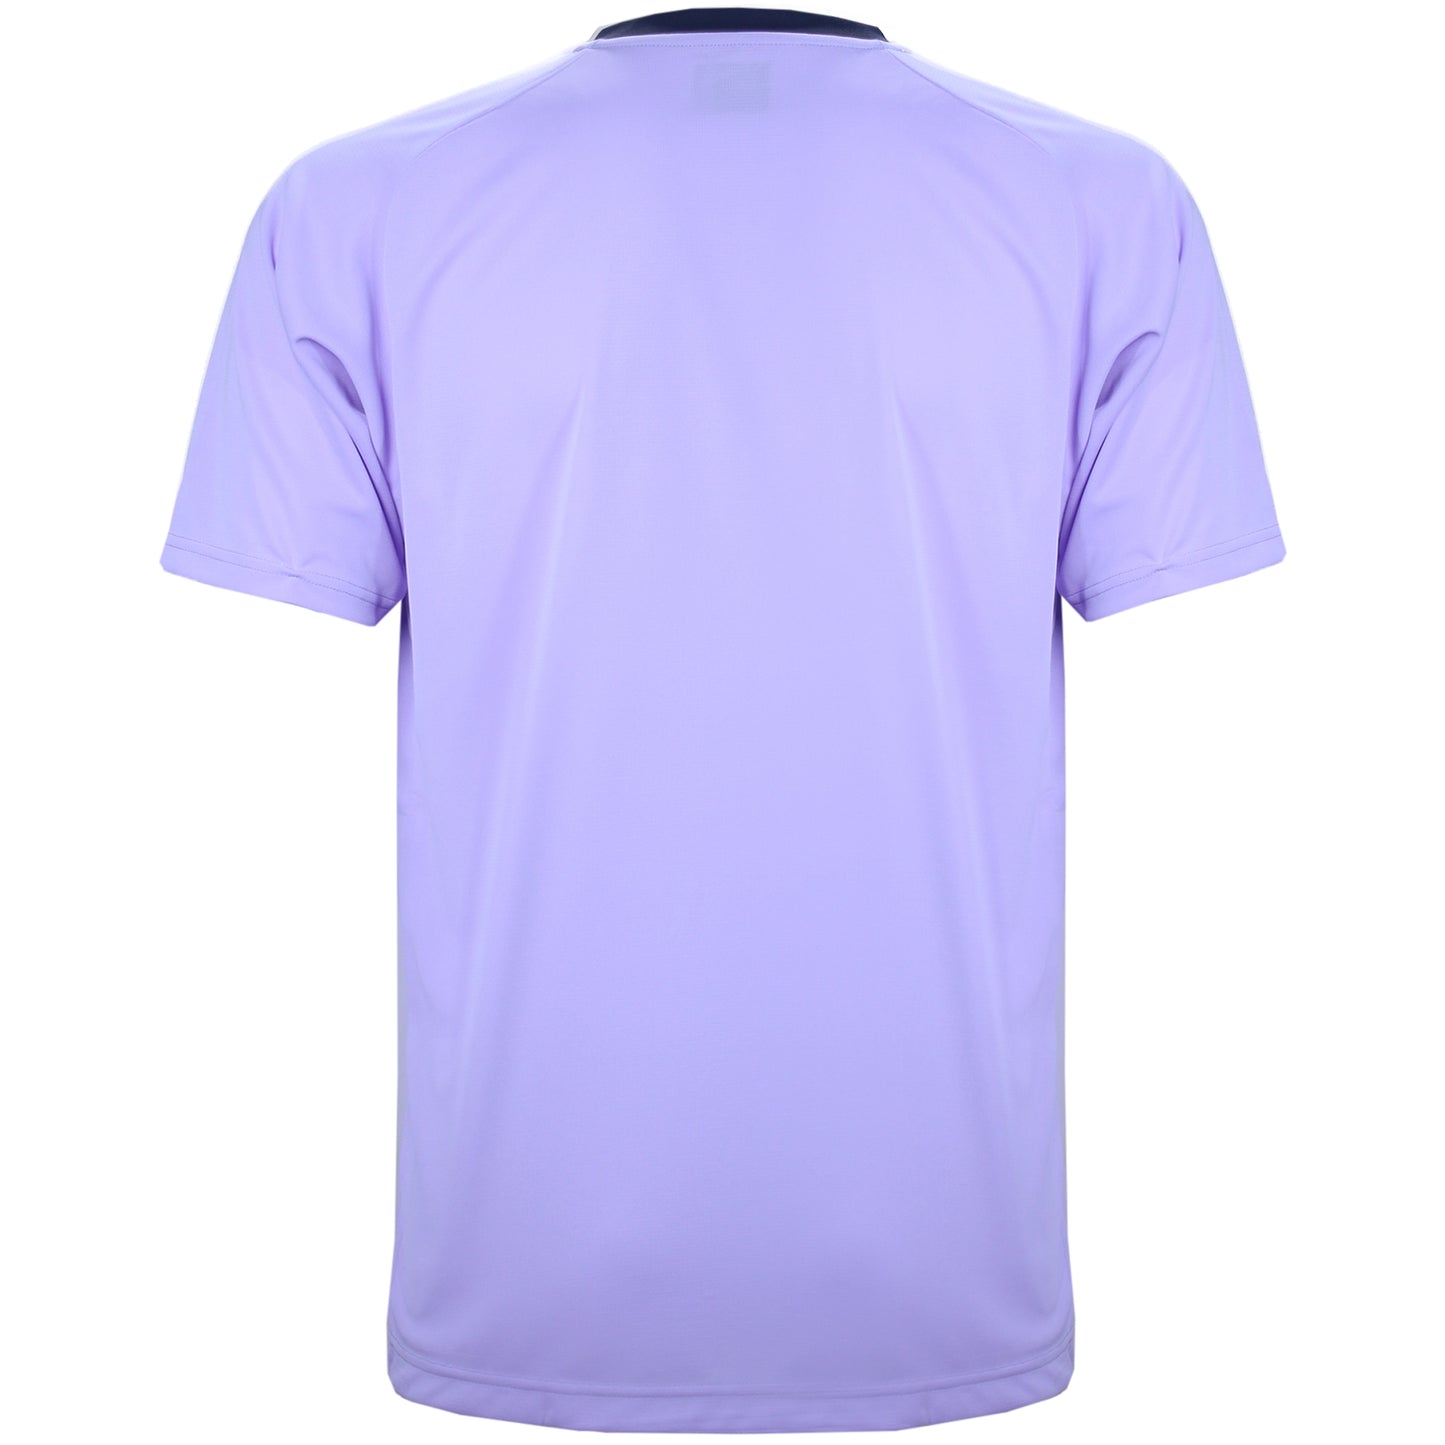 Yonex Men's Badminton Shirt Gideon/Sukamuljo Replica Mist Purple (16632)